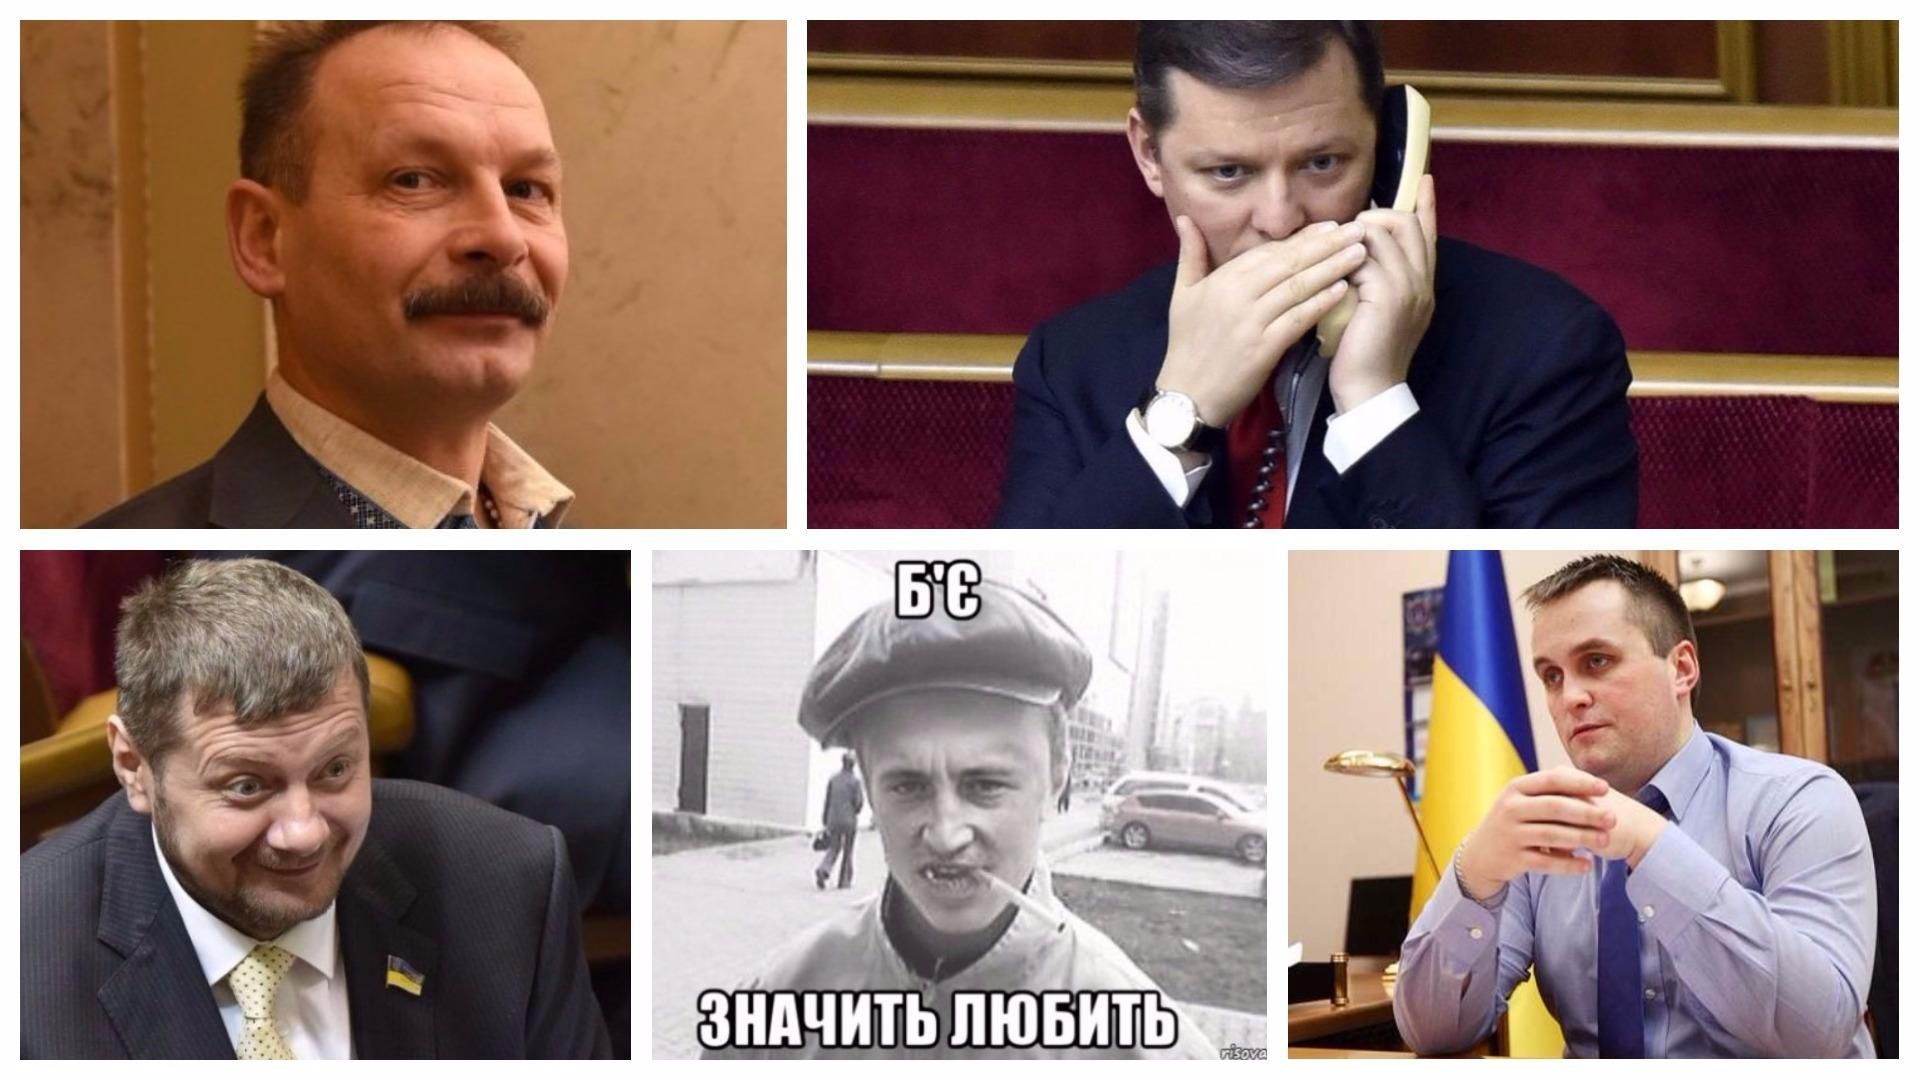 Хлам, девки, идиоты: топ-6 оскорбительных цитат от украинских политиков